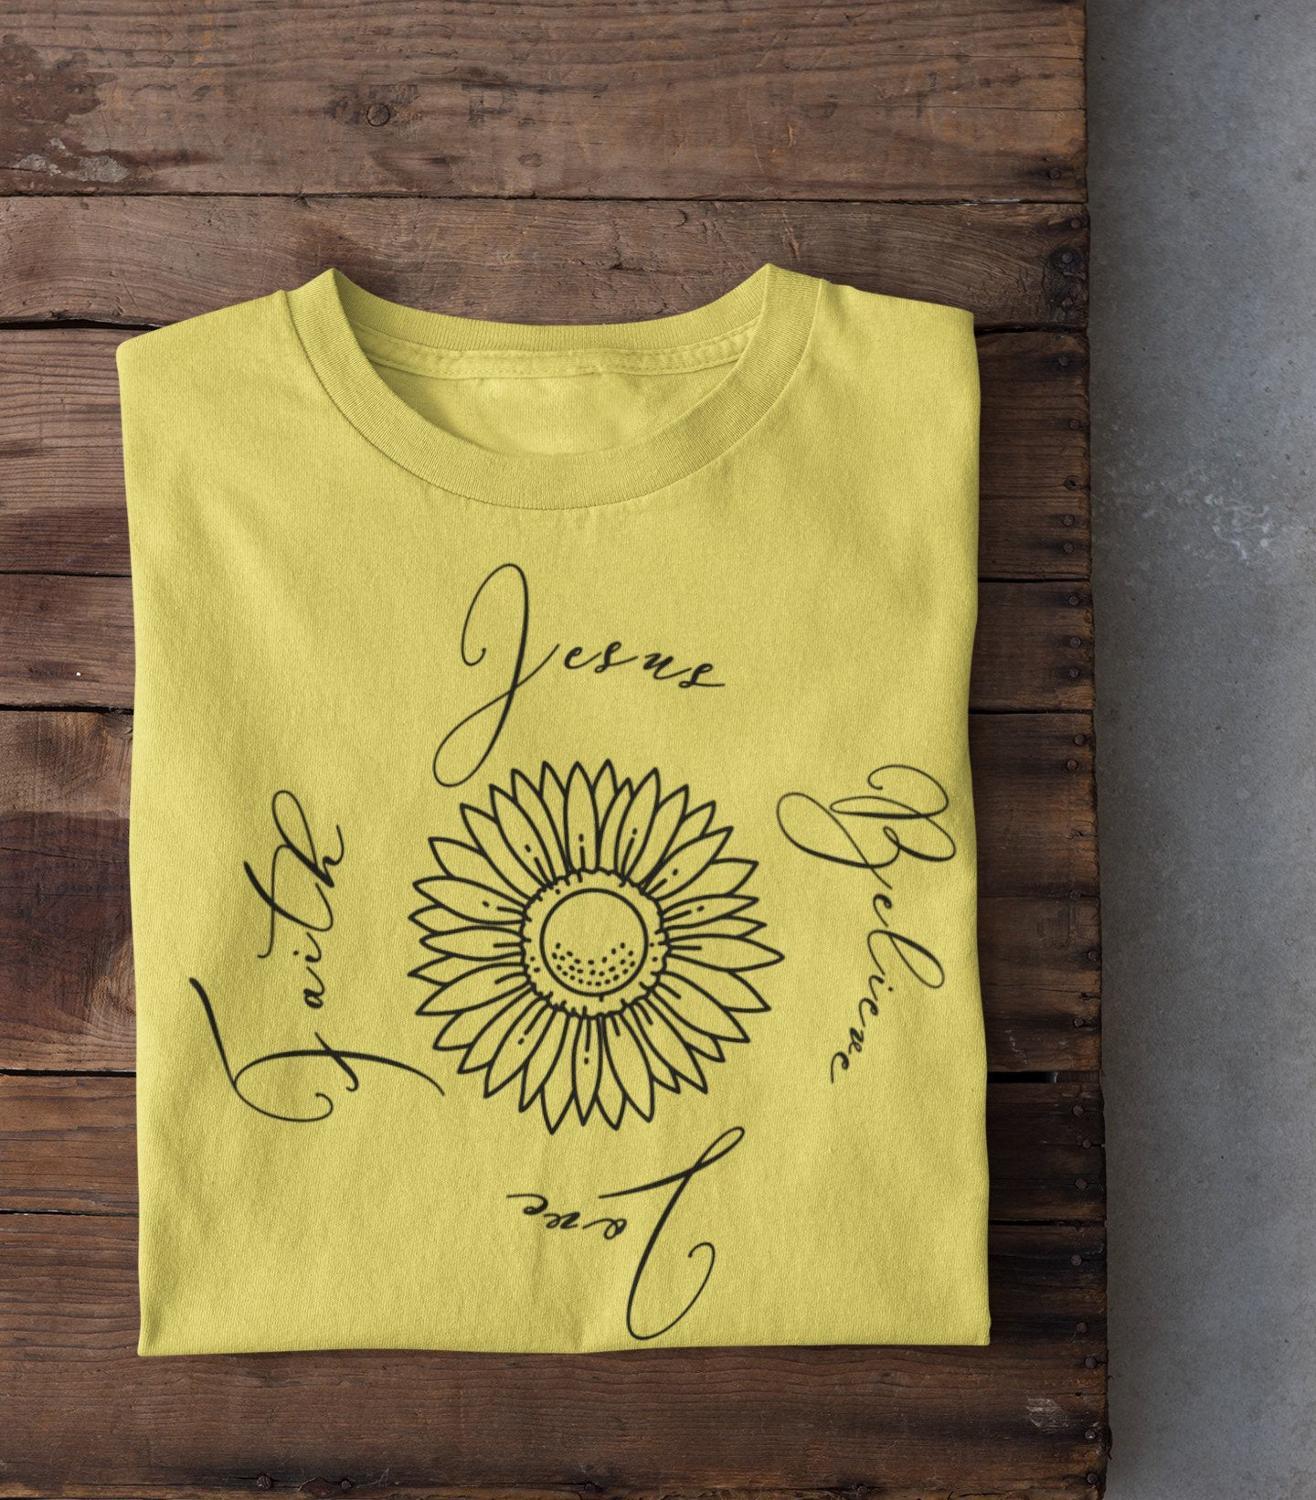 Изображение товара: Футболка с надписью «Sunflower вера в Иисуса», Повседневная рубашка с коротким рукавом в стиле унисекс, с изображением солнечного света, религии, подруги, подарок на день рождения, Властелин